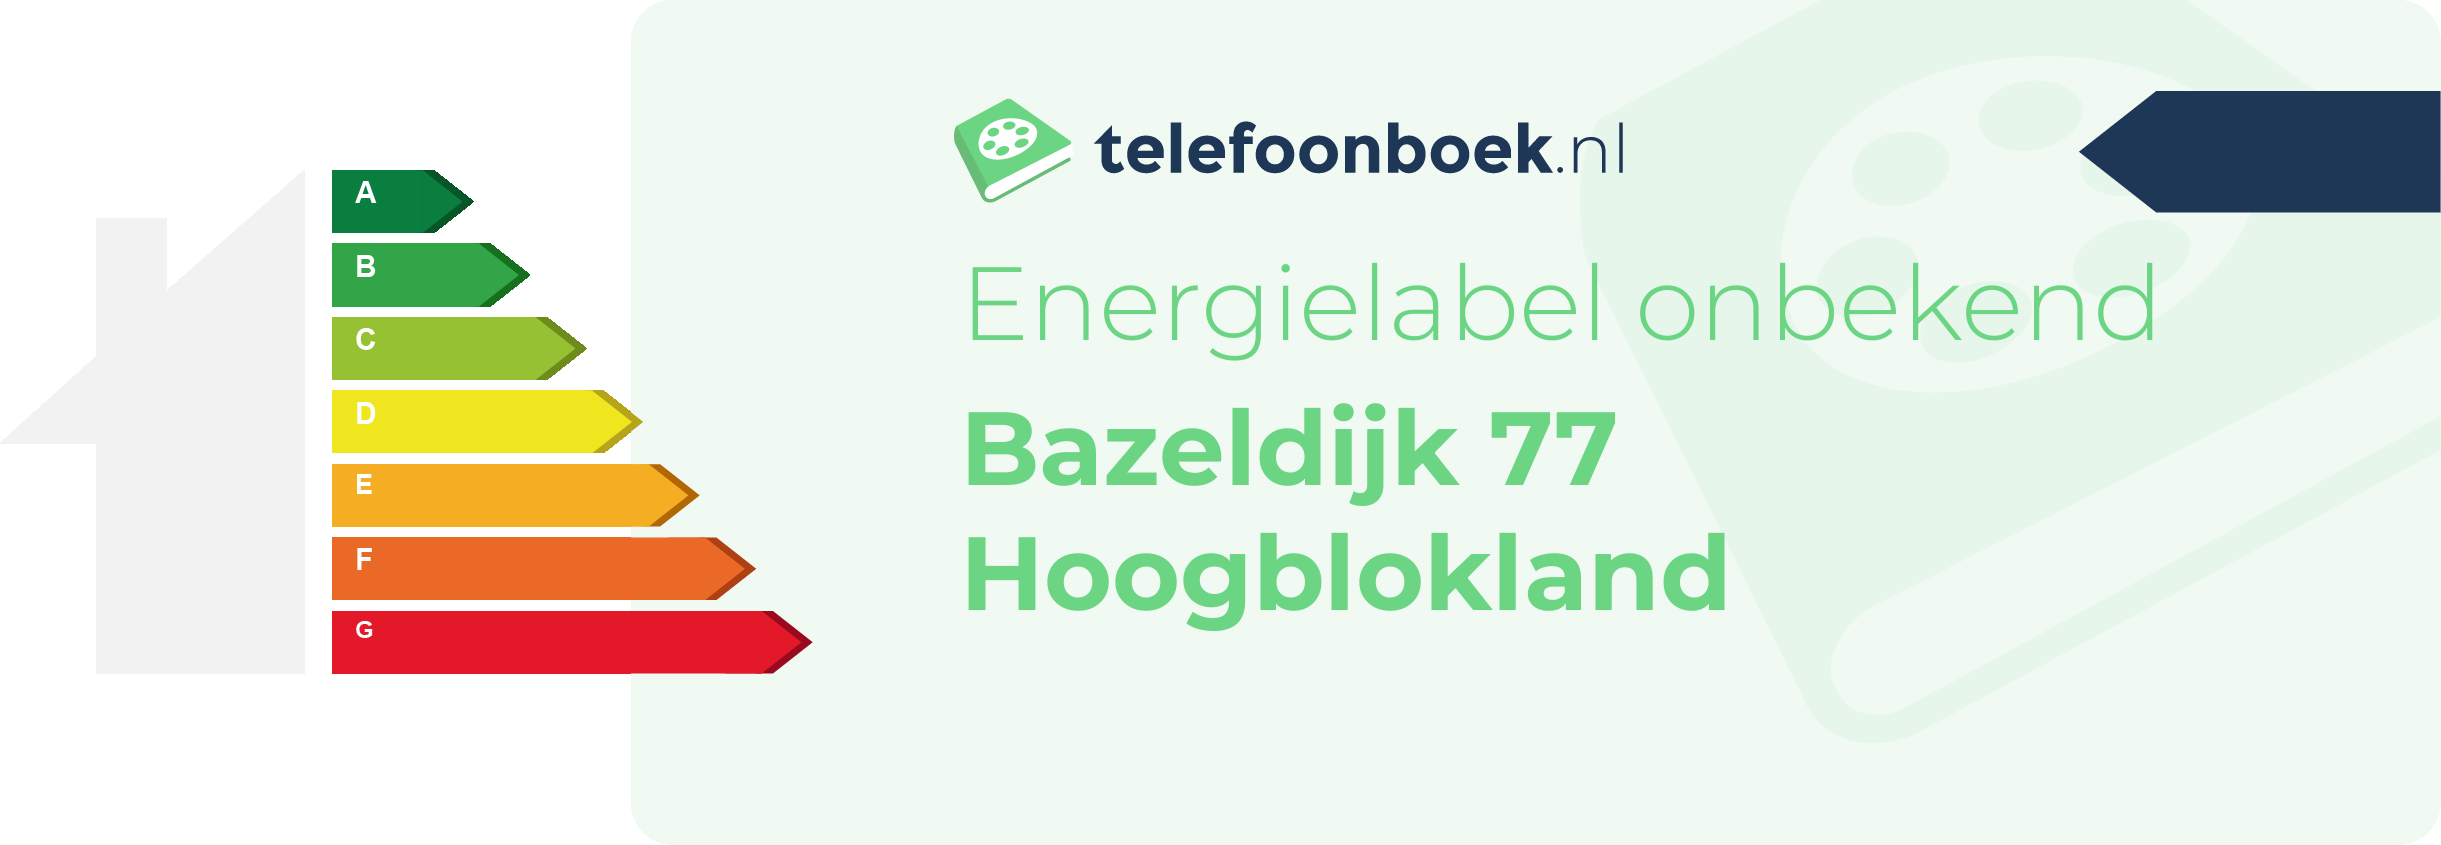 Energielabel Bazeldijk 77 Hoogblokland